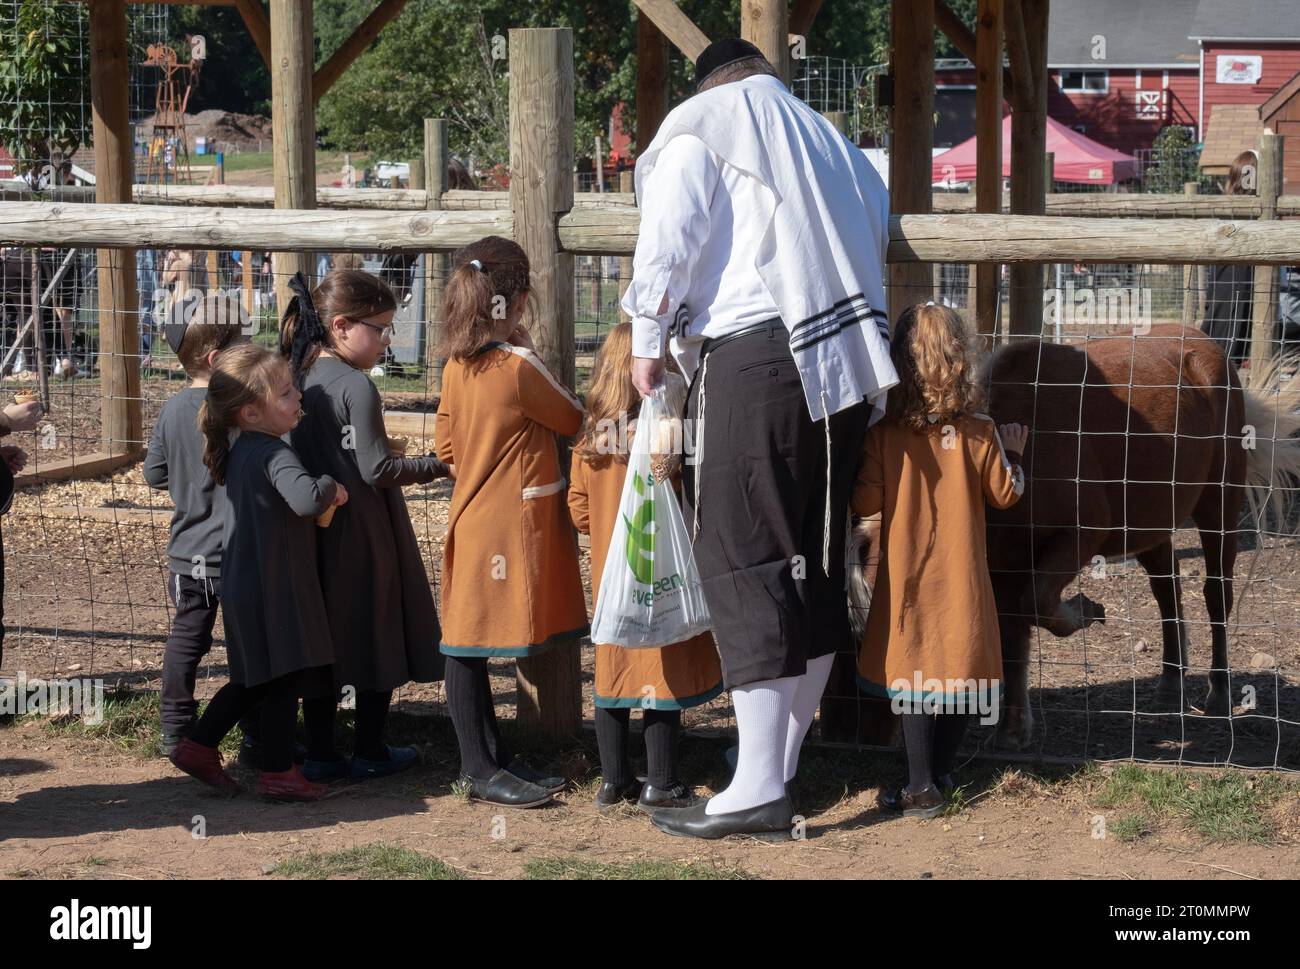 Pendant Succos où il est mandaté pour s'amuser, un homme hasidique et plusieurs enfants nourrissent les animaux à West Maple Farm à Mosey, New York. Banque D'Images